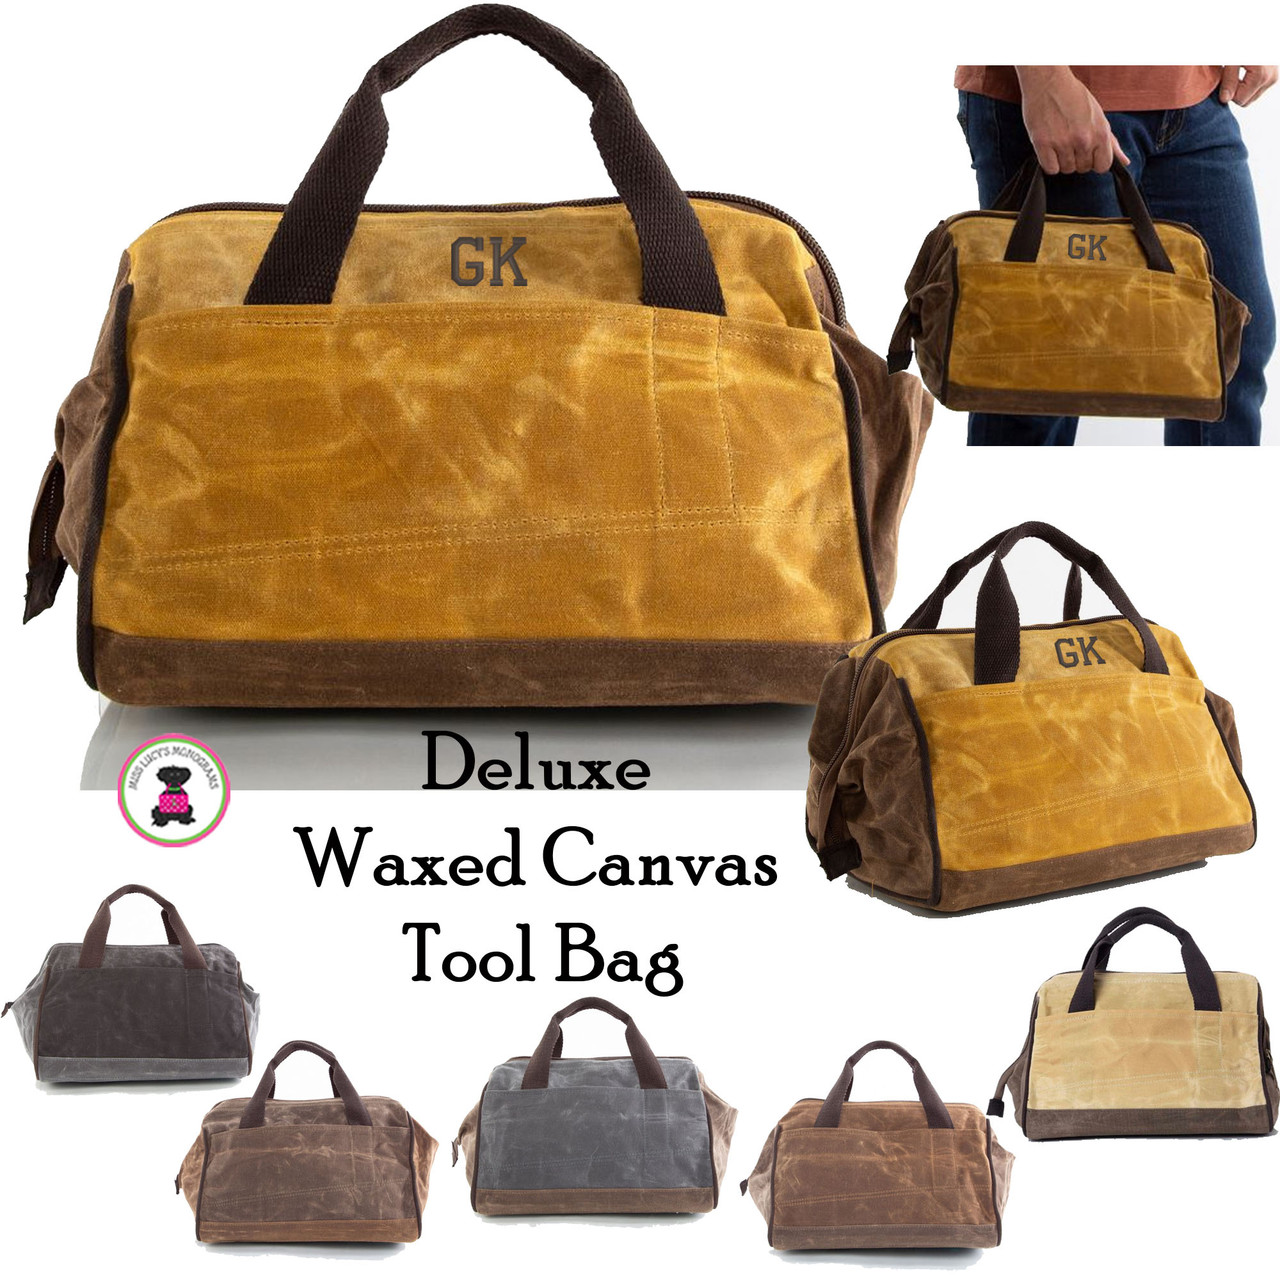 Waxed Canvas Garment Bag in Olive, Khaki, slate